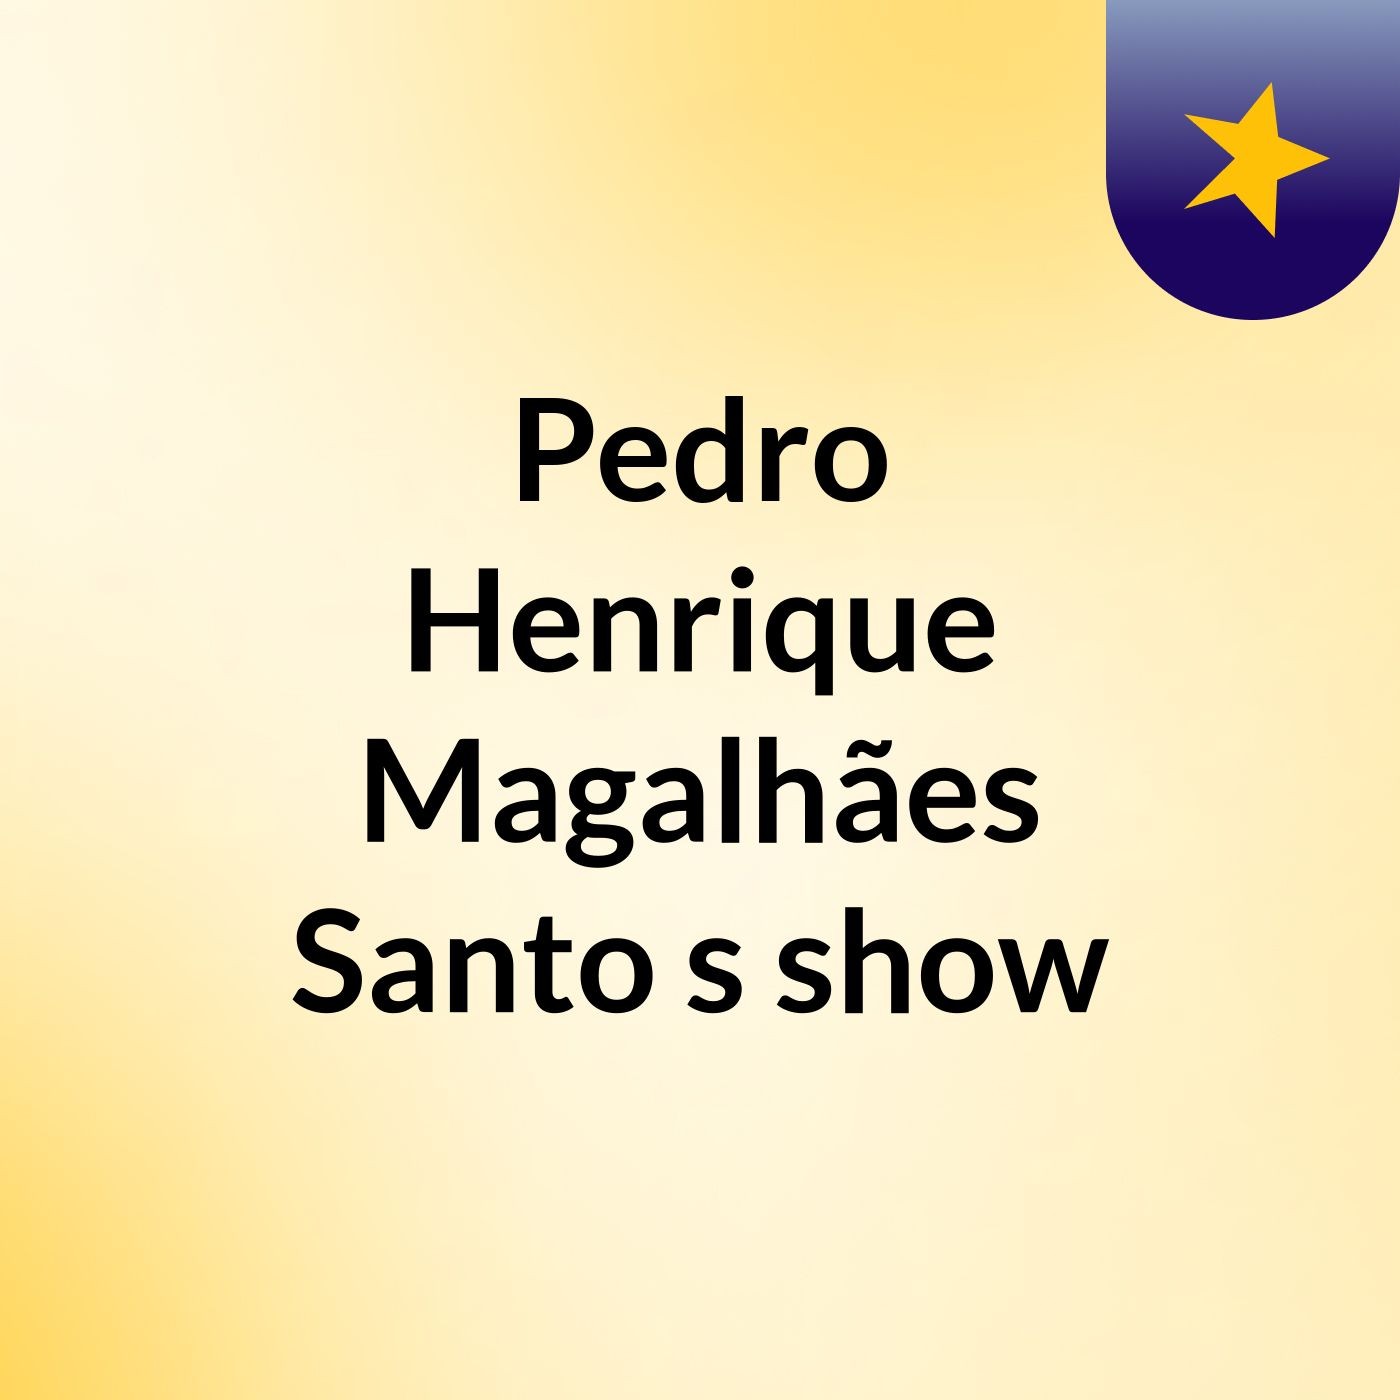 Pedro Henrique Magalhães Santo's show